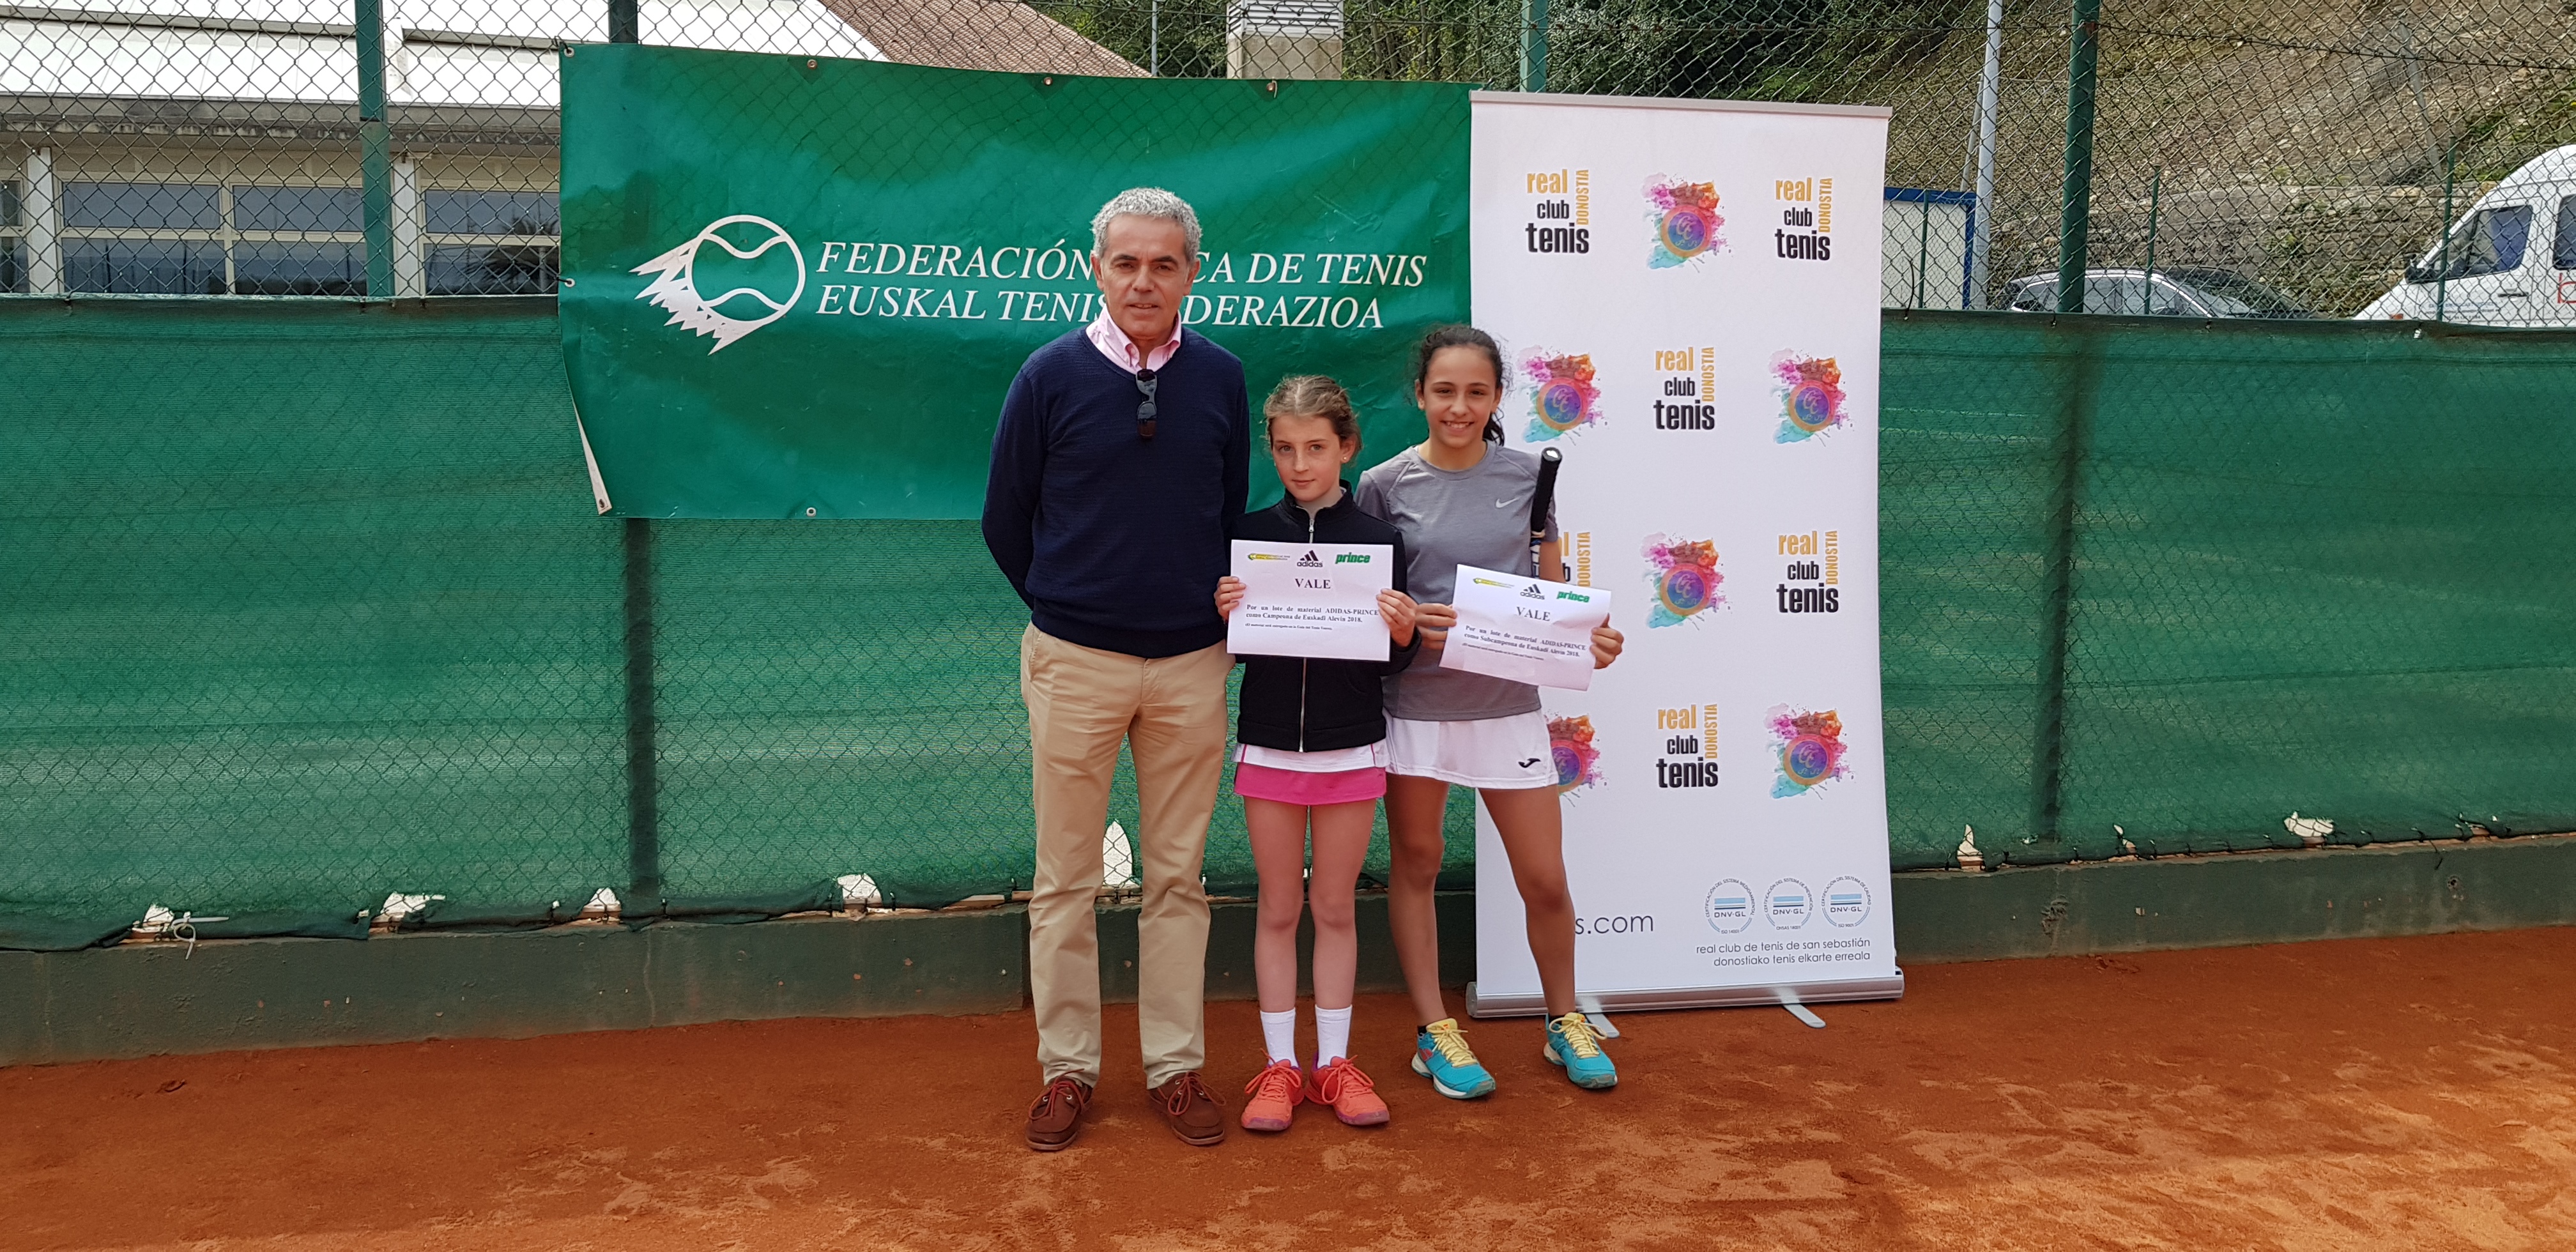 Campeonato de Euskadi Alevín Femenino 2018